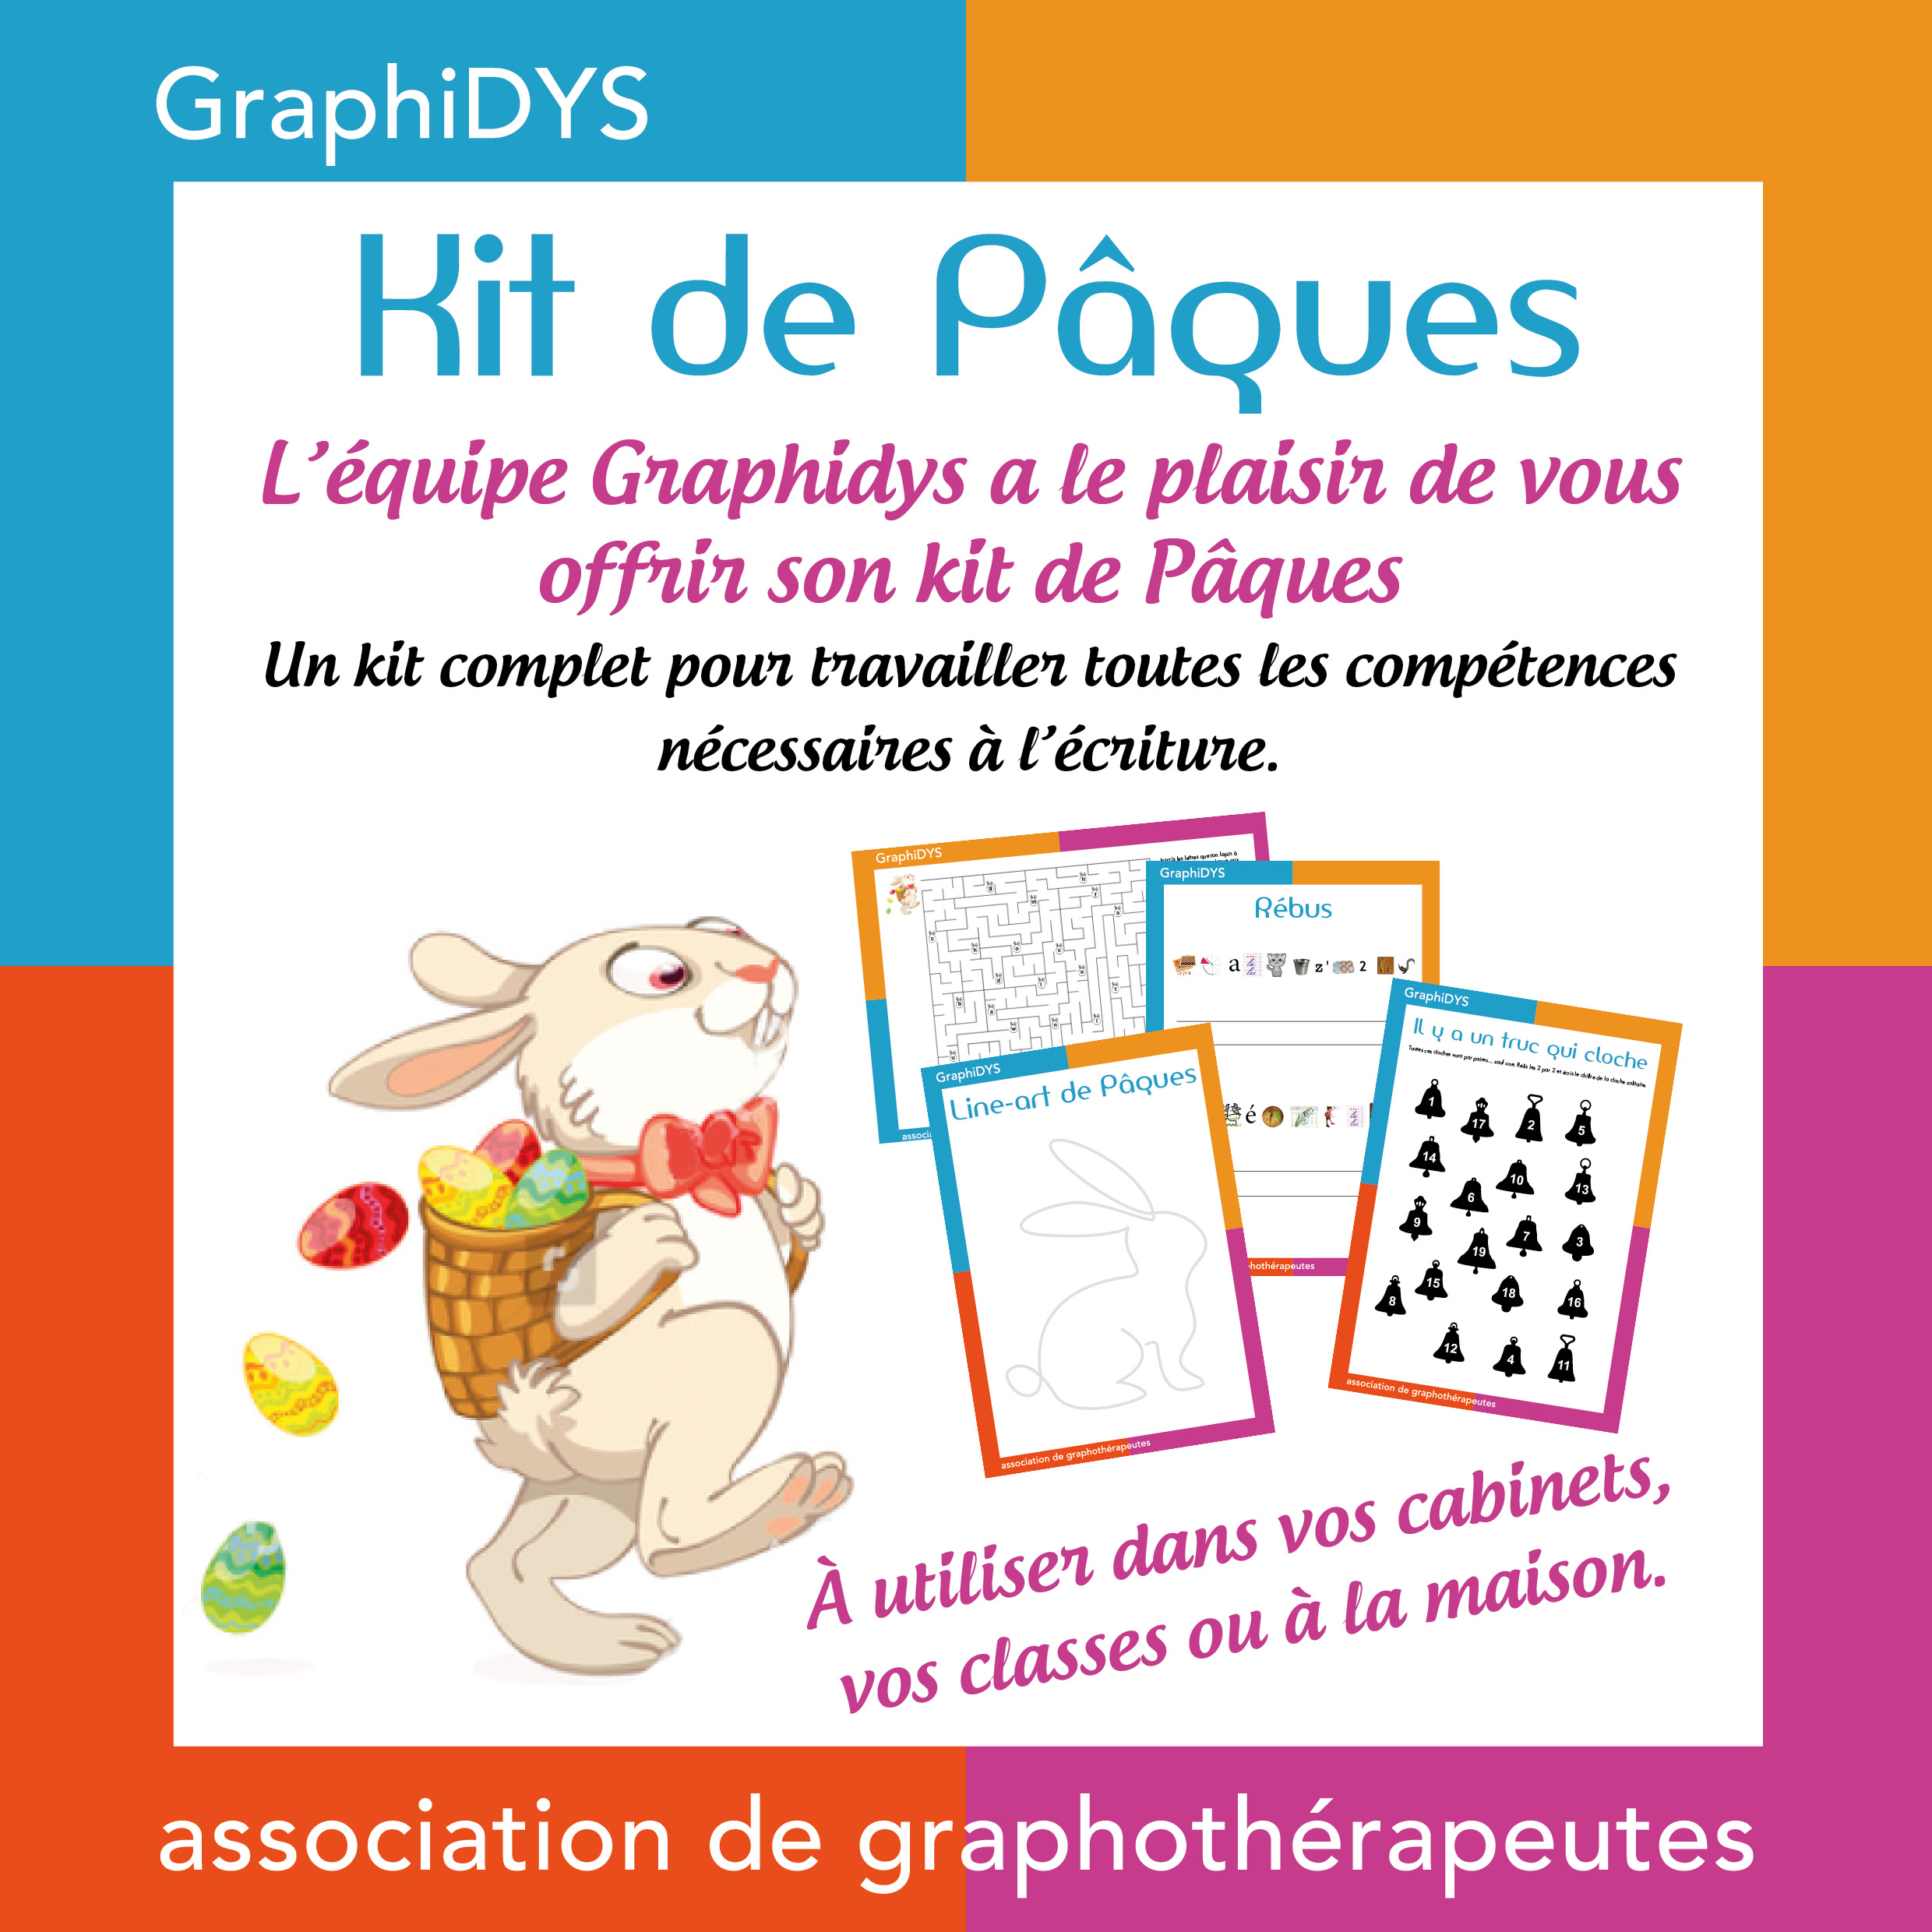 Image Carousel Graphidys Le kit de Pâques